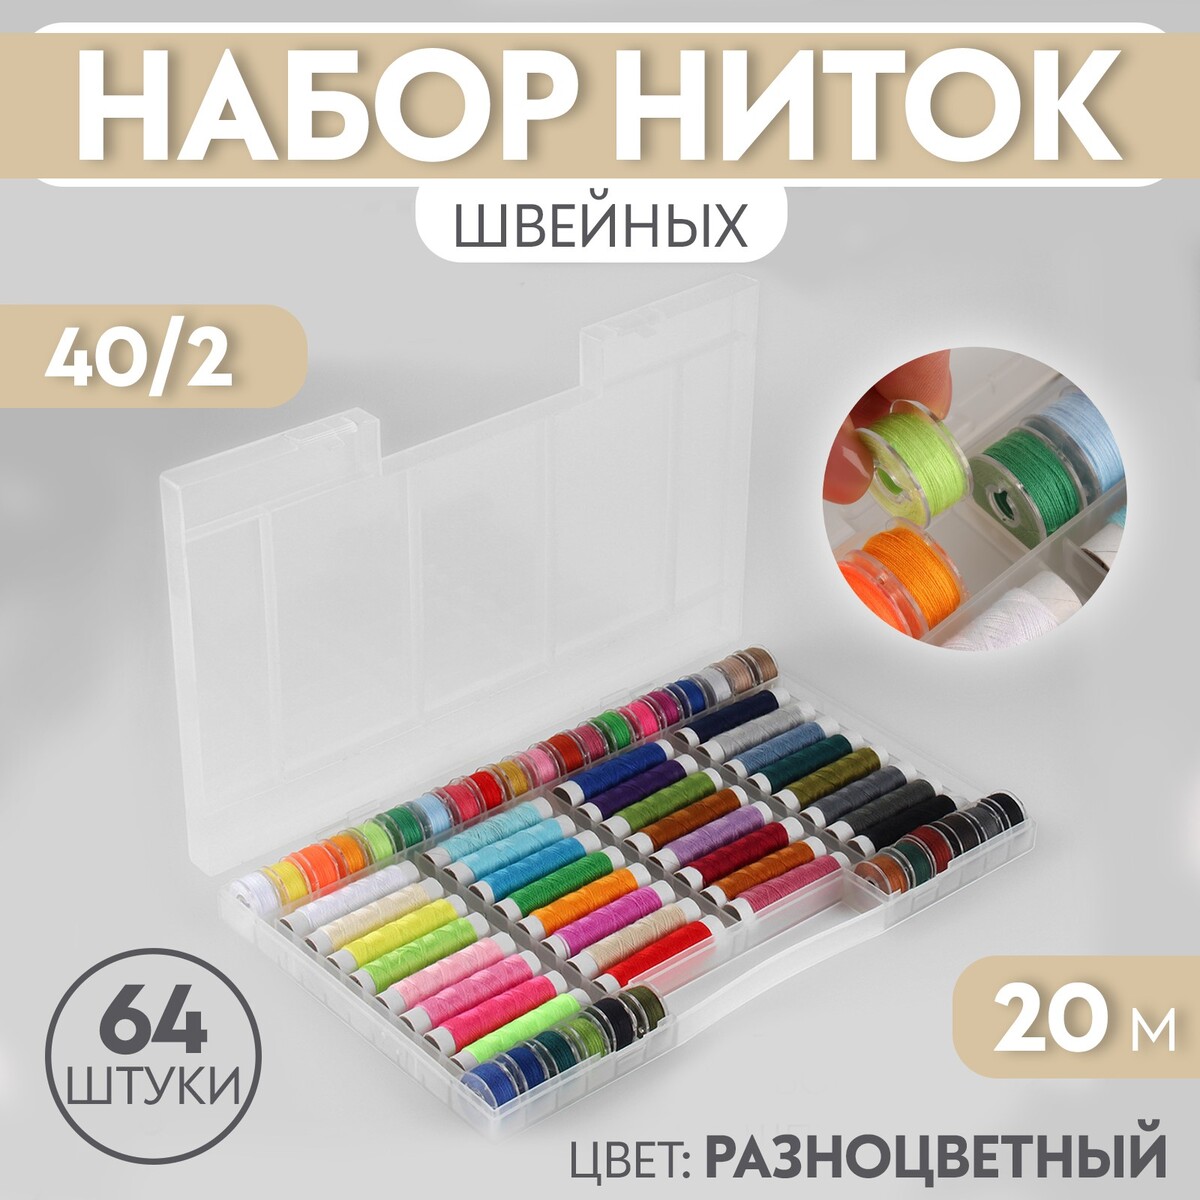 Набор швейных ниток, 40/2, 20 м, 64 шт, в органайзере, цвет разноцветный органайзер для хранения швейных принадлежностей 15 × 15 × 15 см бежевый